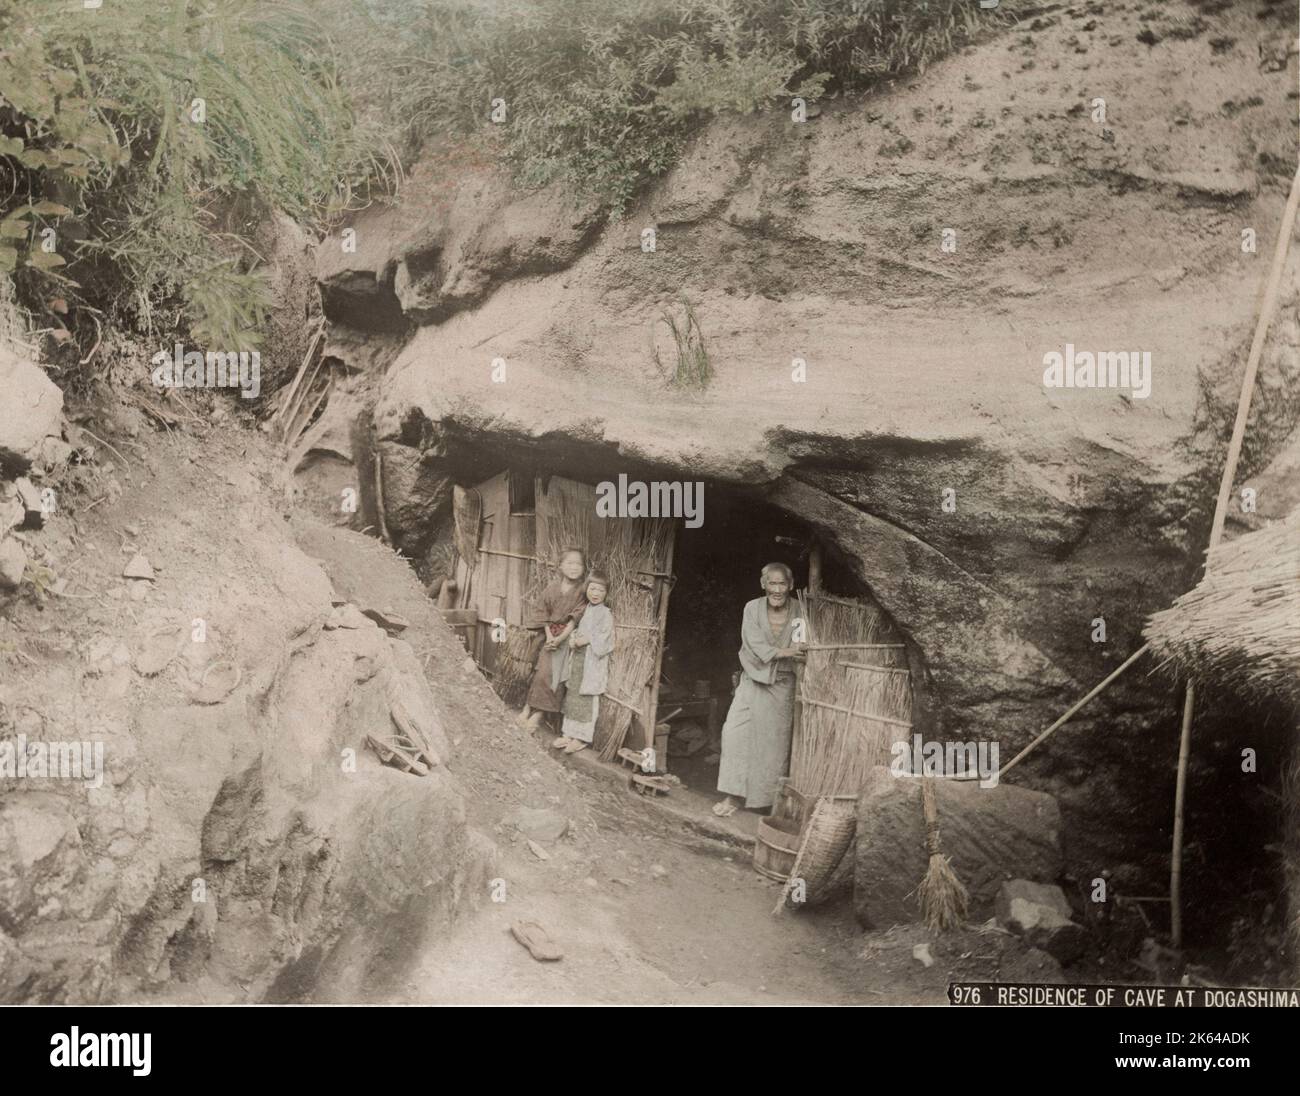 Fotografía vintage del siglo XIX - habitantes de cuevas, casa tallada en roca, Dogashima, Japón, hombre mayor y niños. Foto de stock